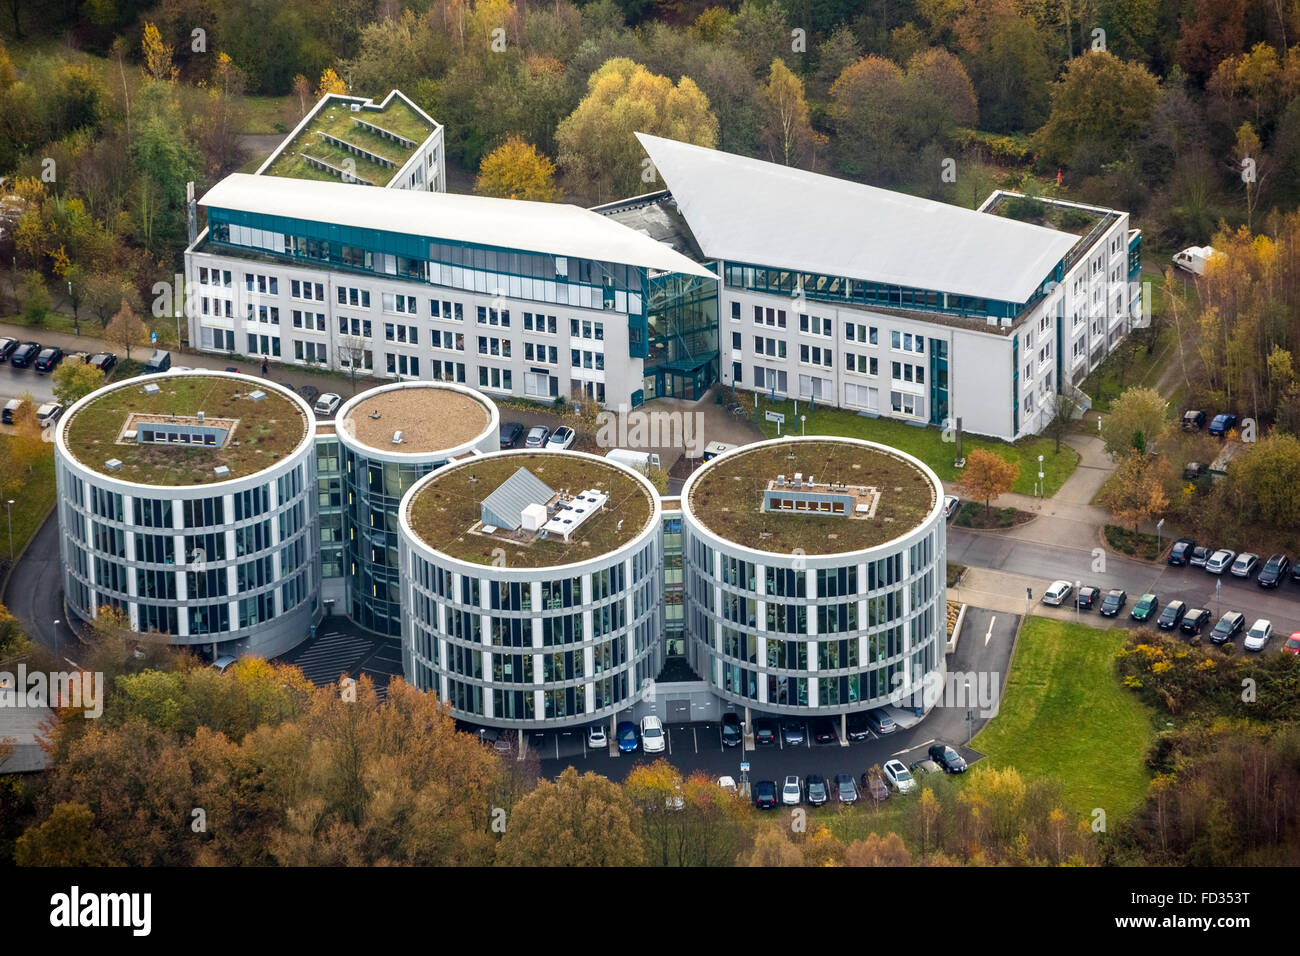 Vue aérienne de l'Institut de génie de l'environnement, les soins dentaires et la biomédecine centre Recherche et développement Witten, Uni Banque D'Images